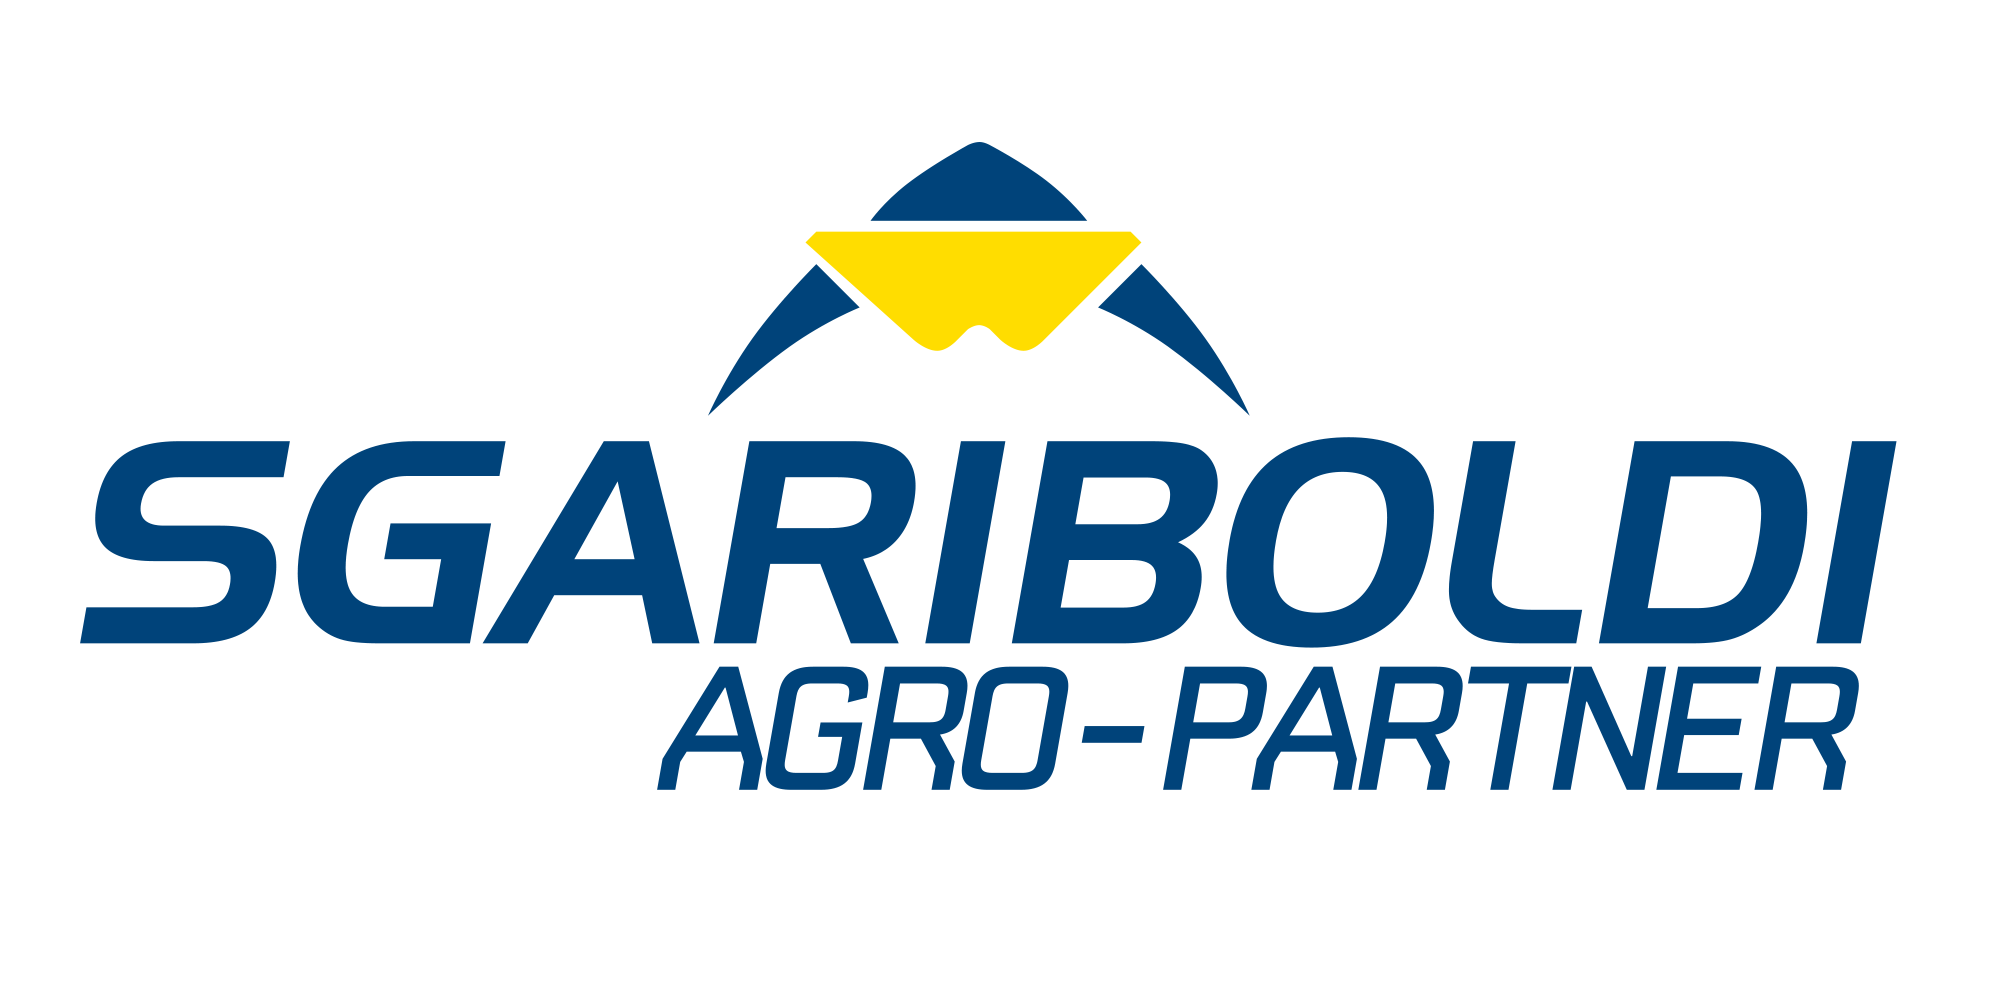 SGARIBOLDI Agro-Partner